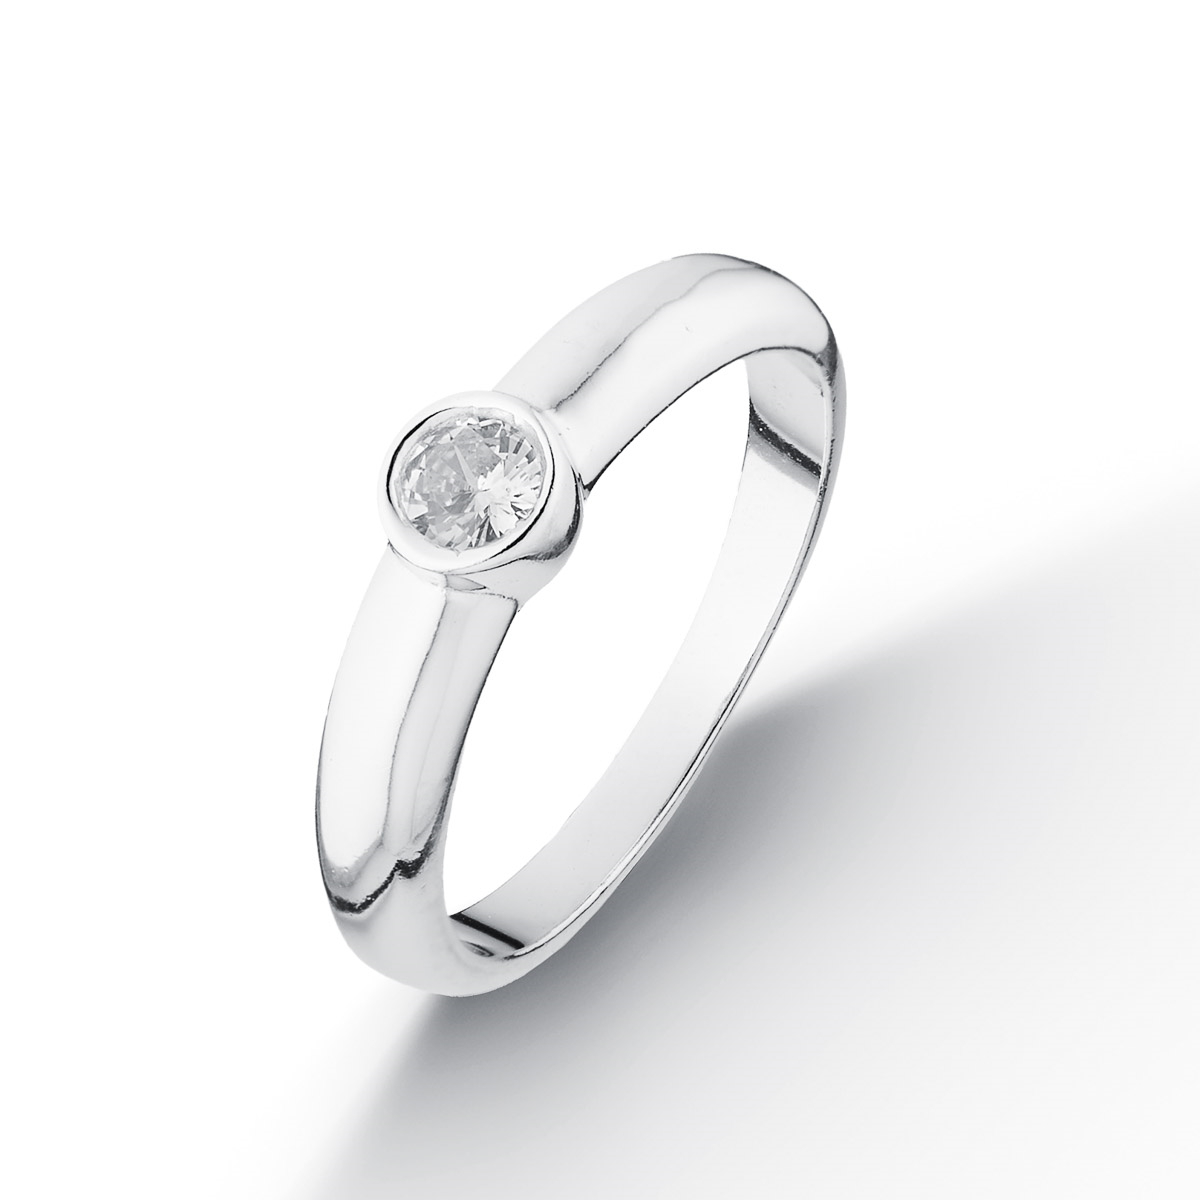 NUBIS® Stříbrný prsten se zirkonem - velikost 52 - NB-5092-52